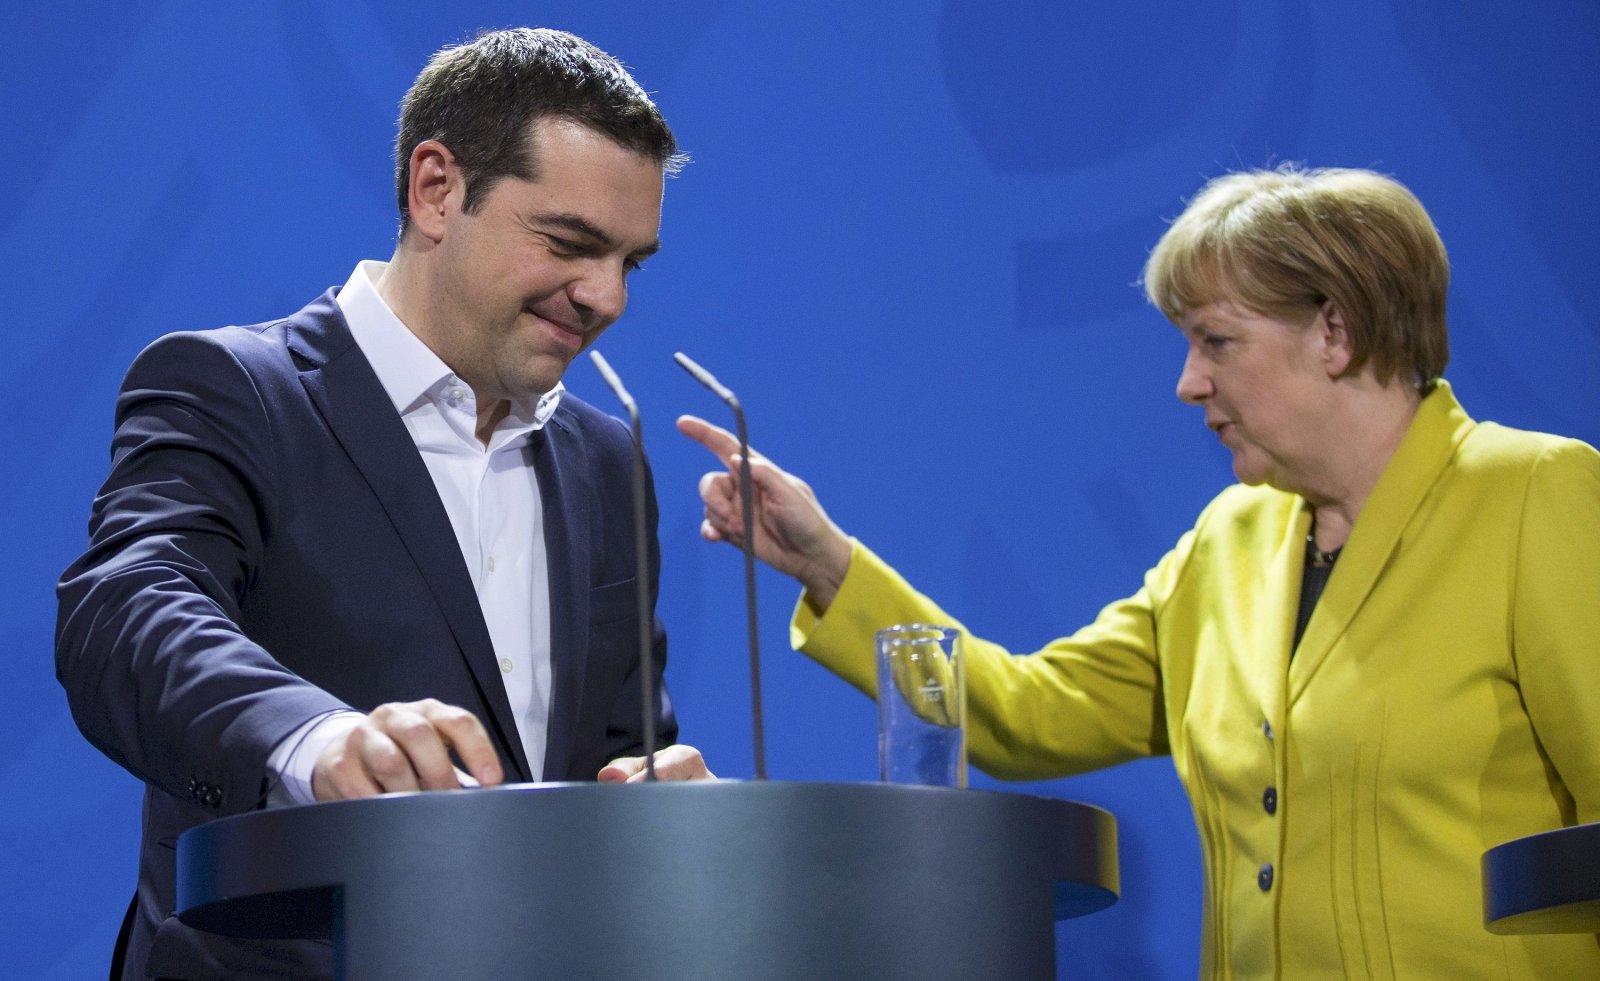 Στενός συνεργάτης Μέρκελ: Ο Τσίπρας δεν θα πετύχει πολιτική λύση στο Βερολίνο